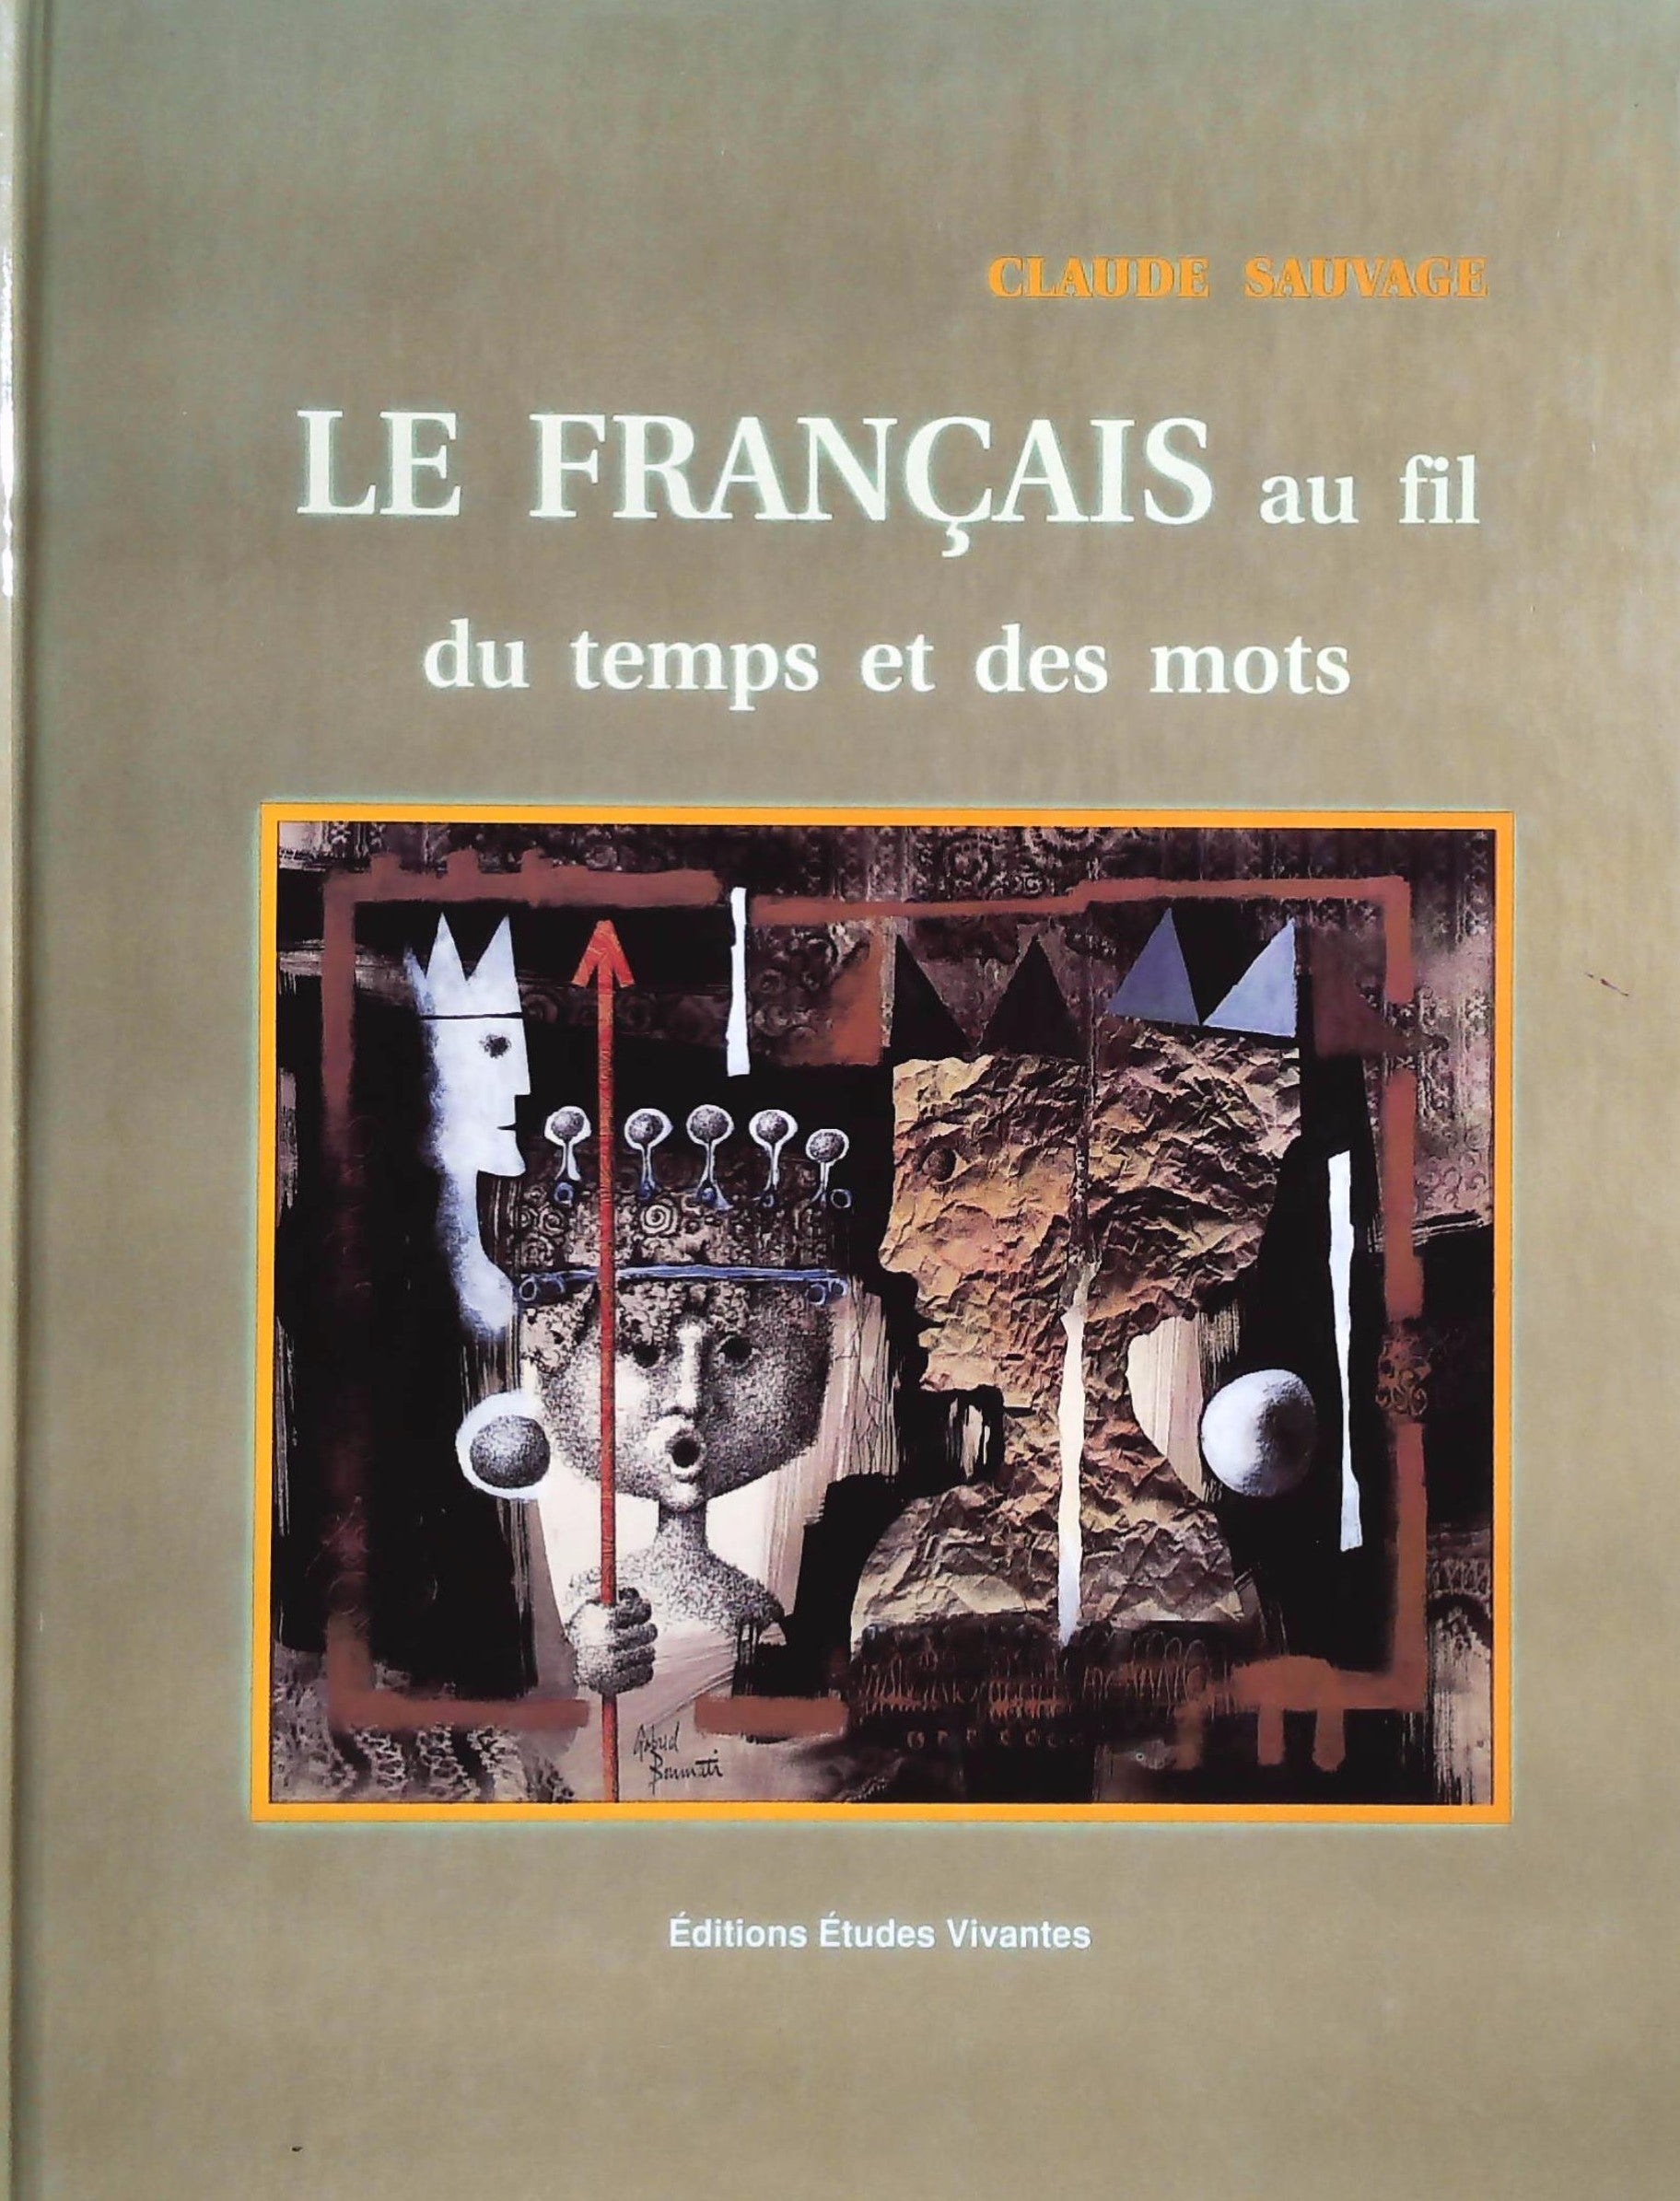 Livre ISBN 2760704939 Le français au fil du temps et des mots (Claude Sauvage)